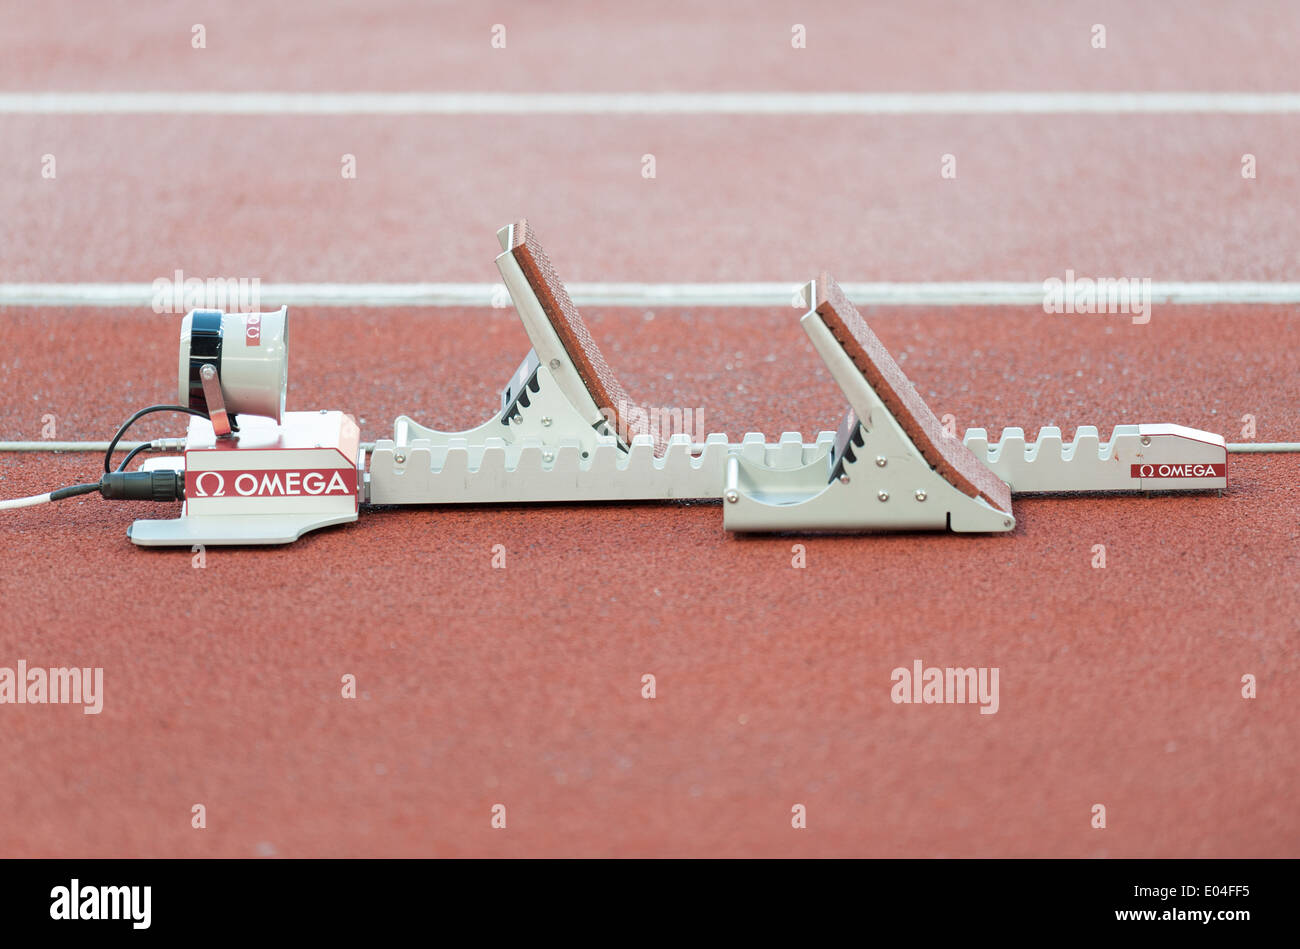 Blocco di partenza con integrato il sensore chronometry su una gara di corsa via a Zurigo (Svizzera) stadio Letzigrund Foto Stock